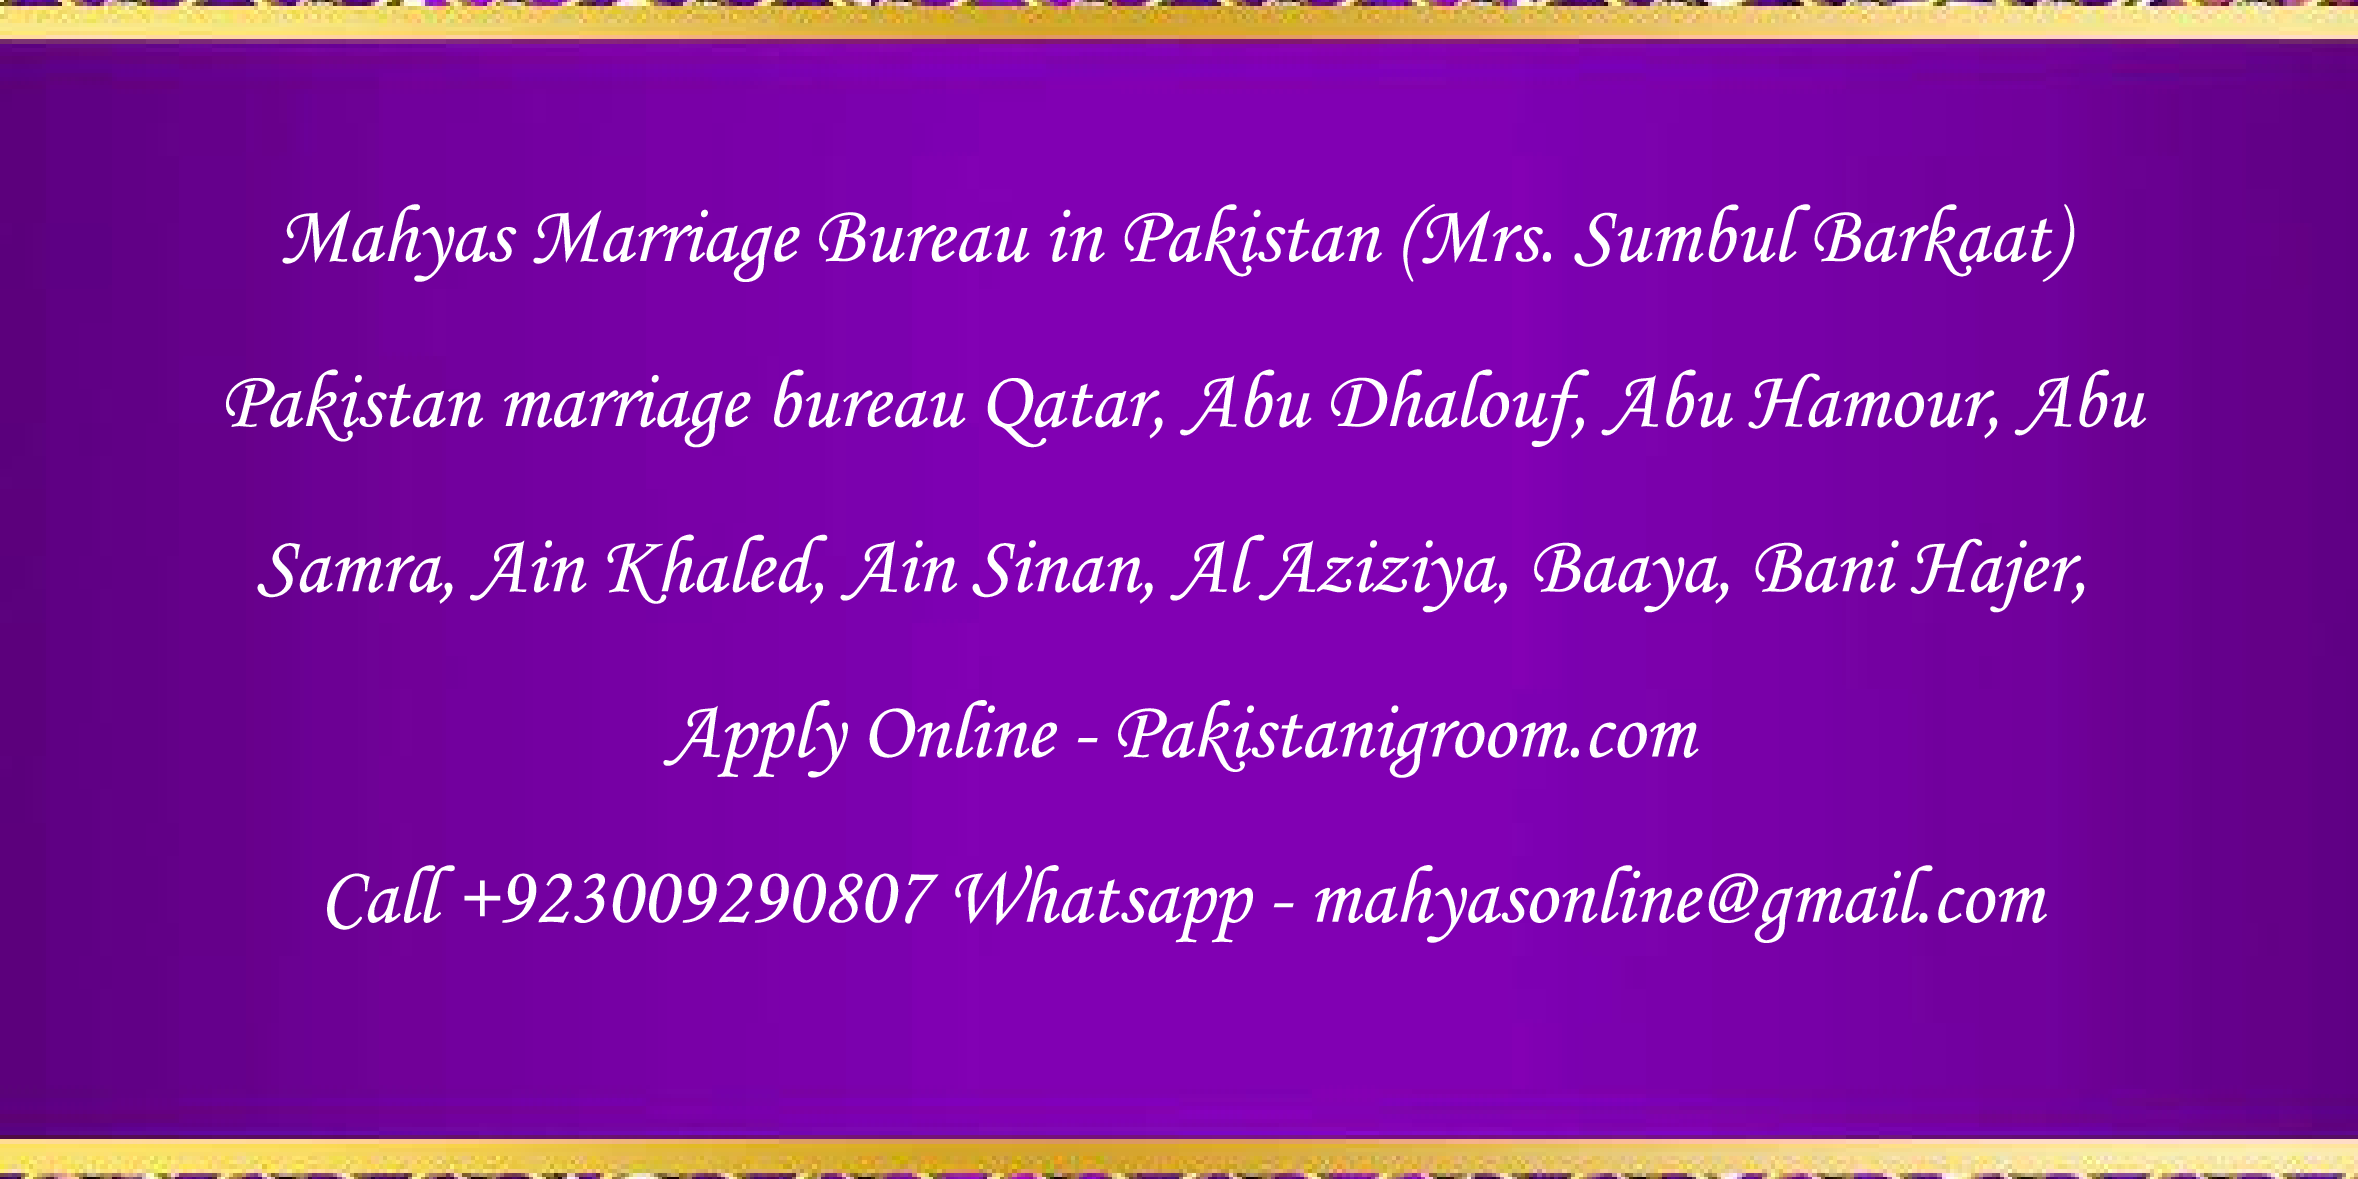 Mahyas-marriage-bureau-Karachi-Pakistan-for-Shia-Sunni-Remarriage-Divorce-Widow-Second-marriage-Punjabi-Pashto-Urdu-25.png